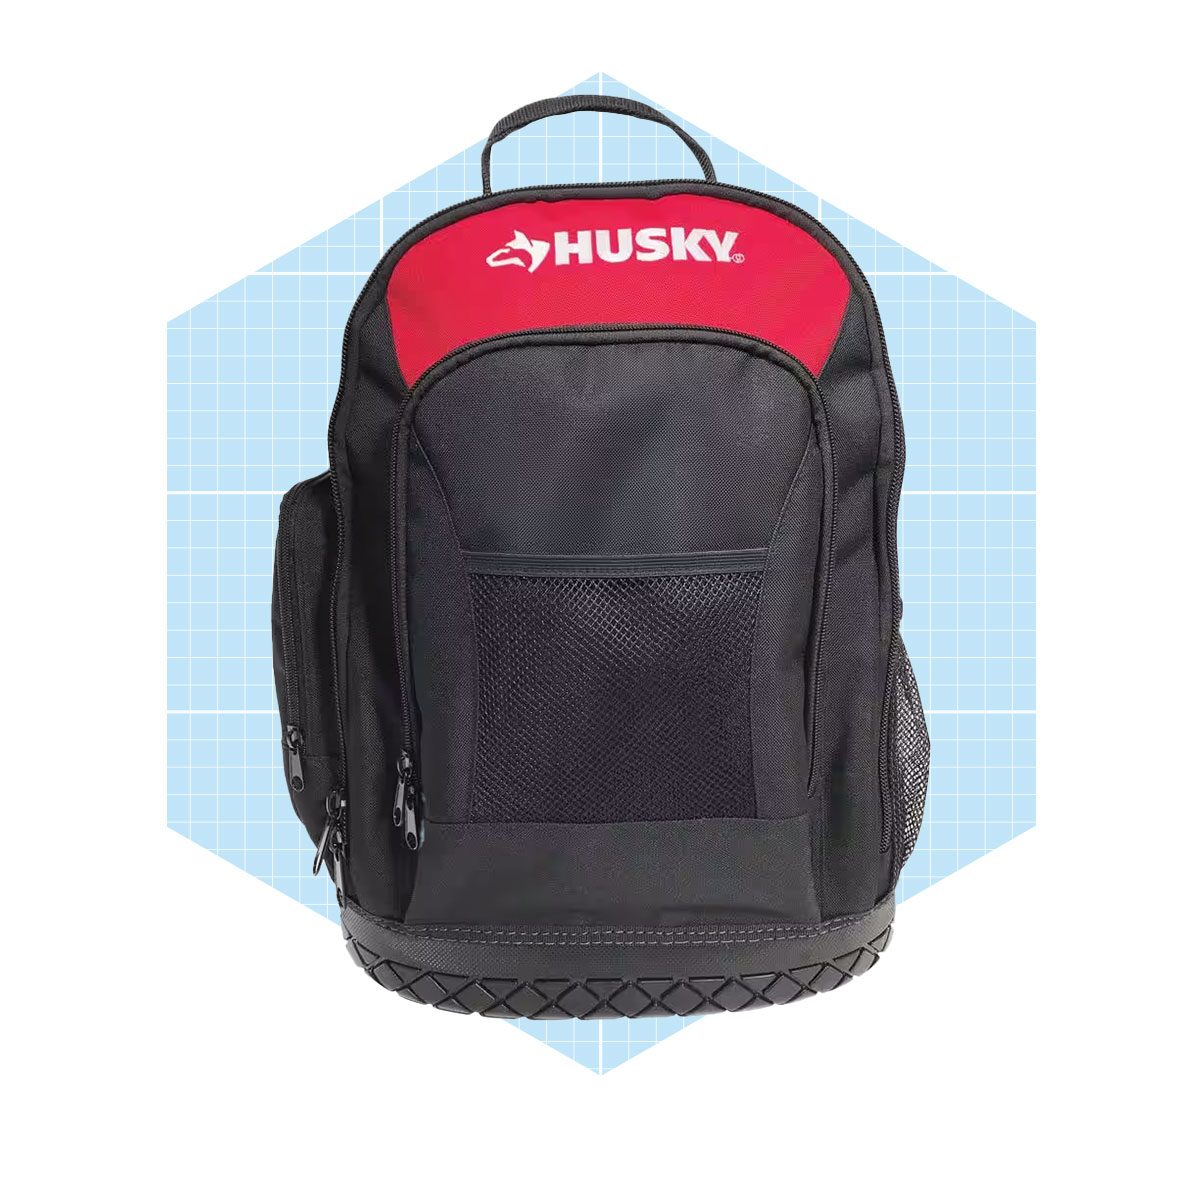 Husky Bags Reviews 2023